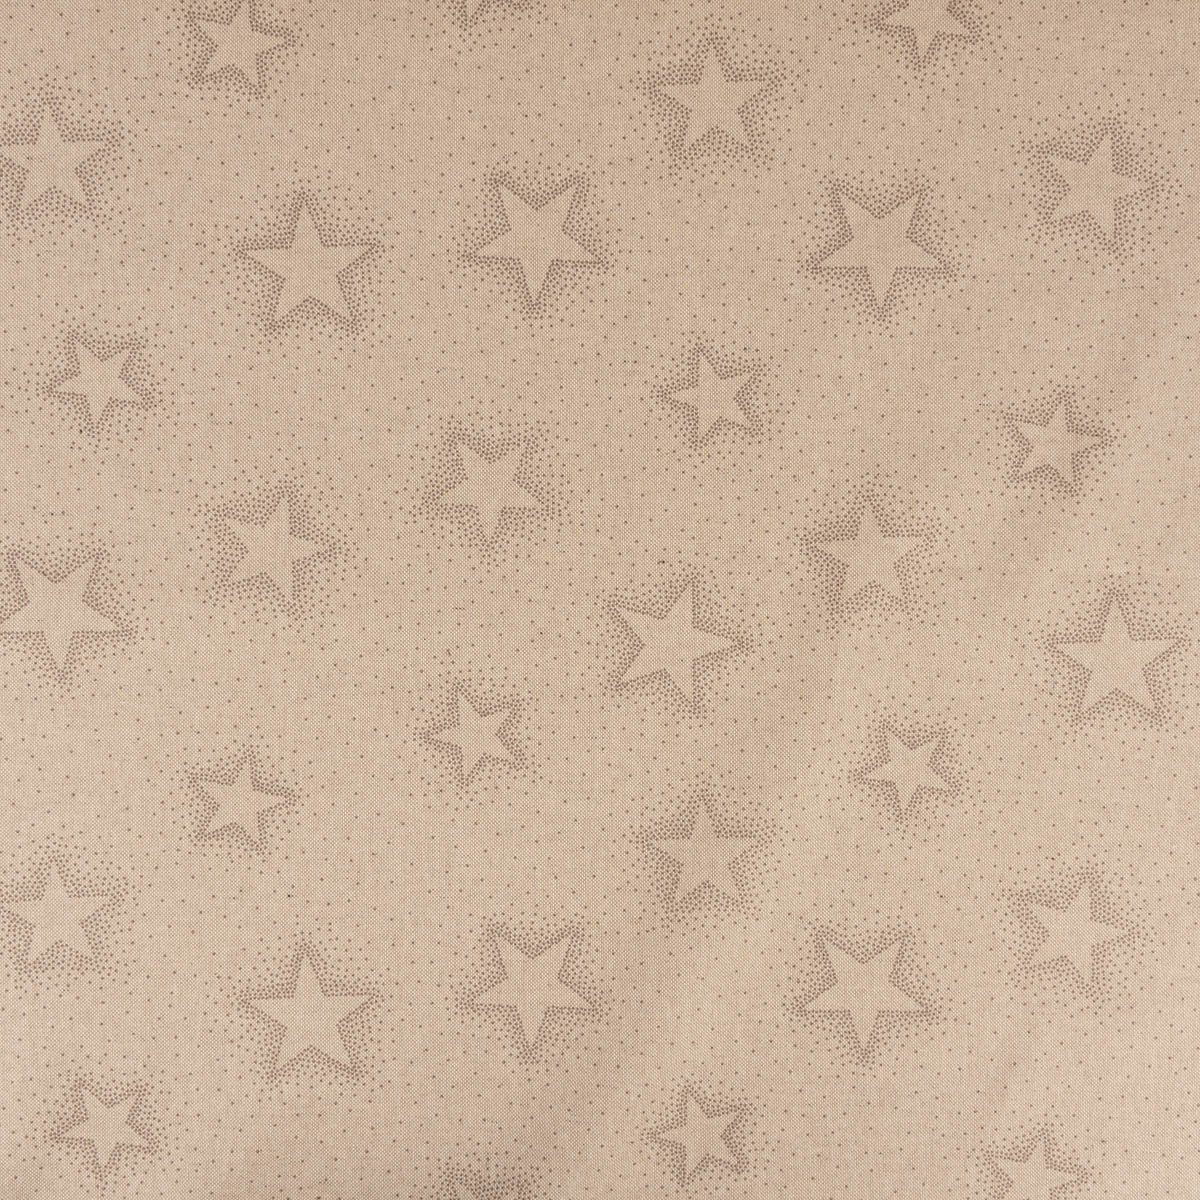 SCHÖNER LEBEN. 40x160cm, Sparkle Sterne grau Tischläufer Weihnachten handmade natur Tischläufer Star